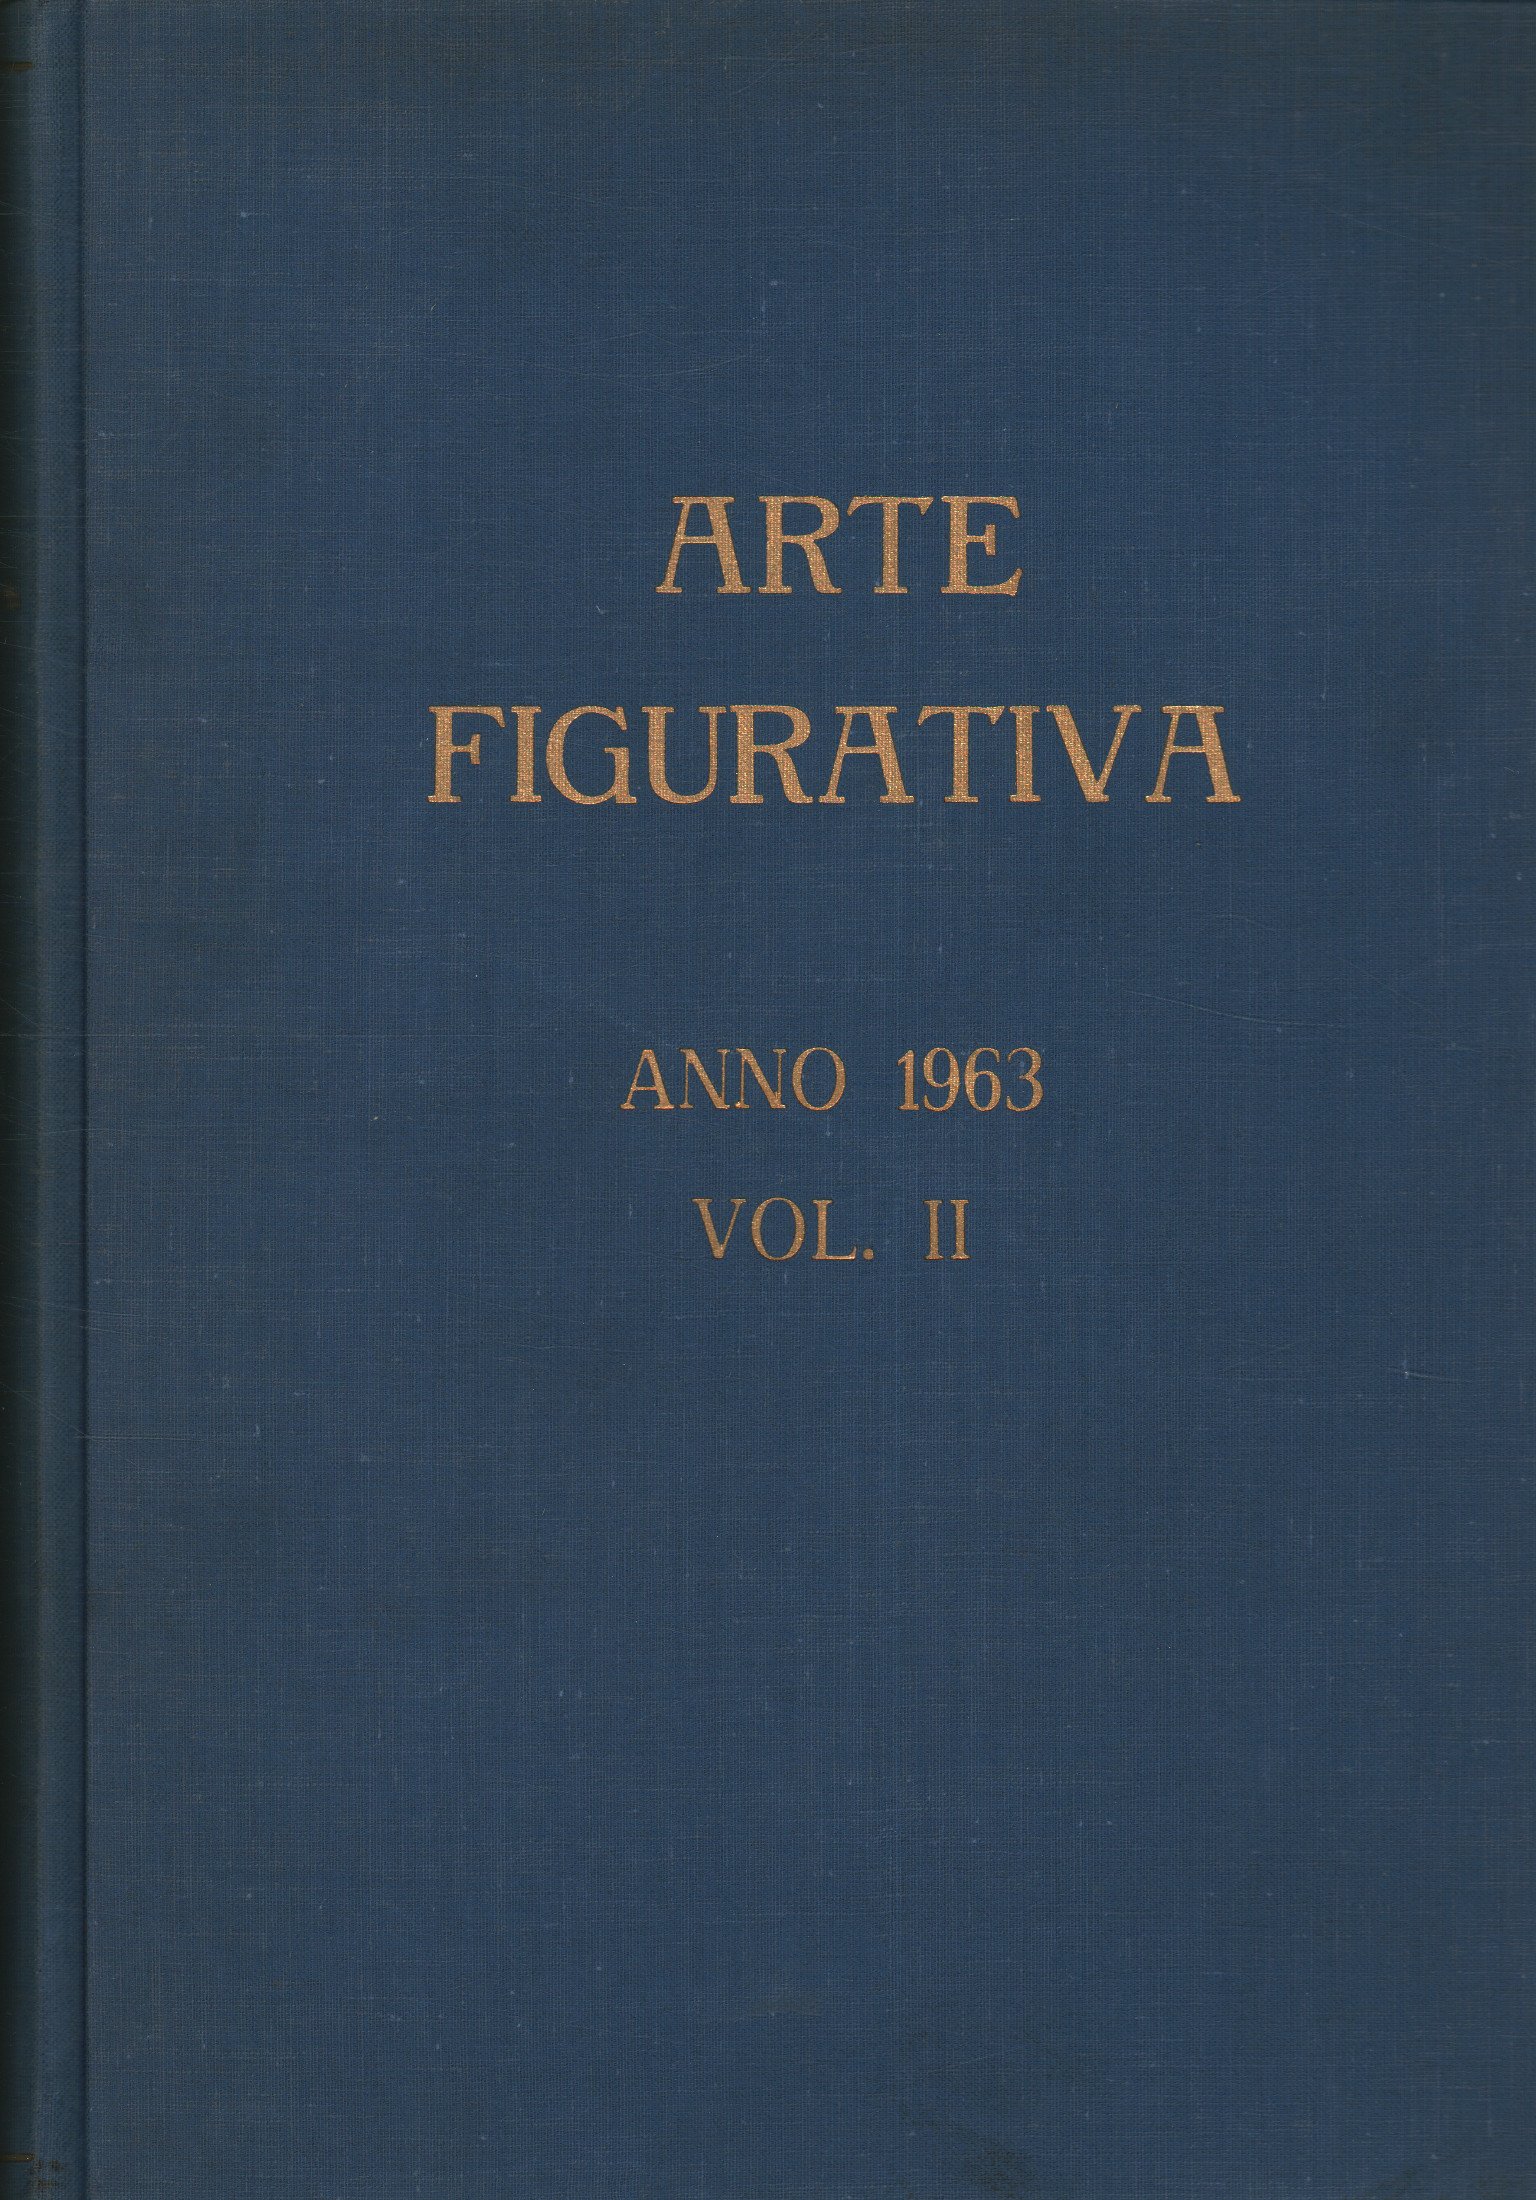 Arte figurativa Anno 1963 Vol. II, AA.VV